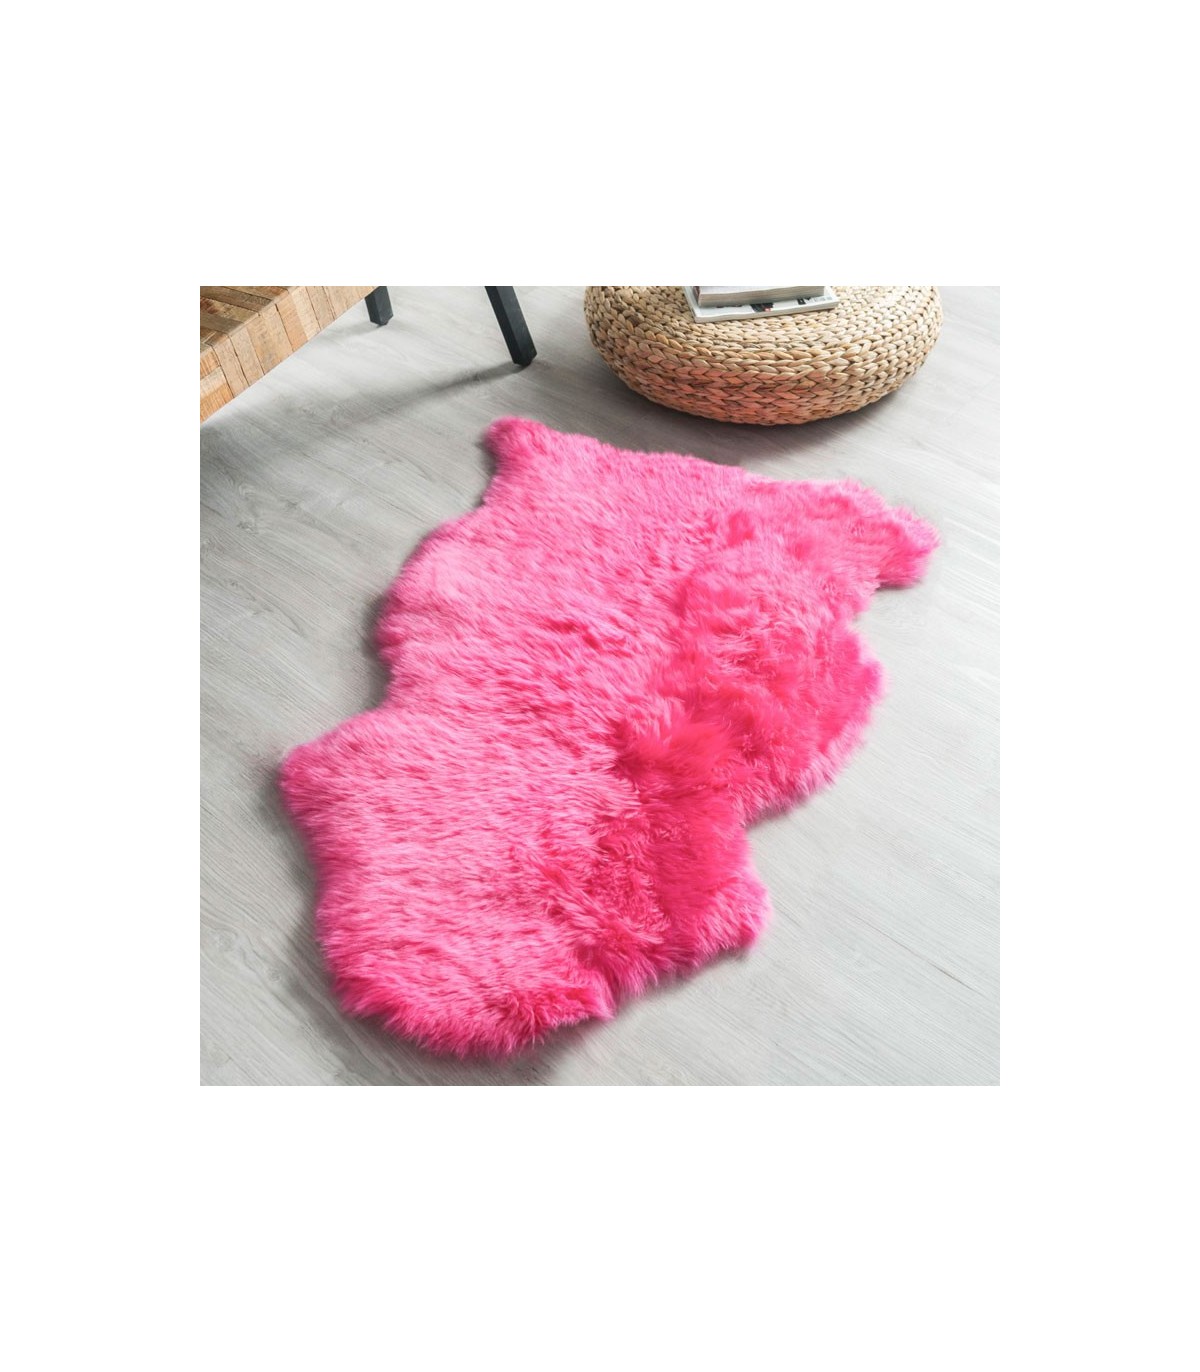 Hot Pink Sheepskin Rug 2x3 5 Ft, Hot Pink Fur Rug